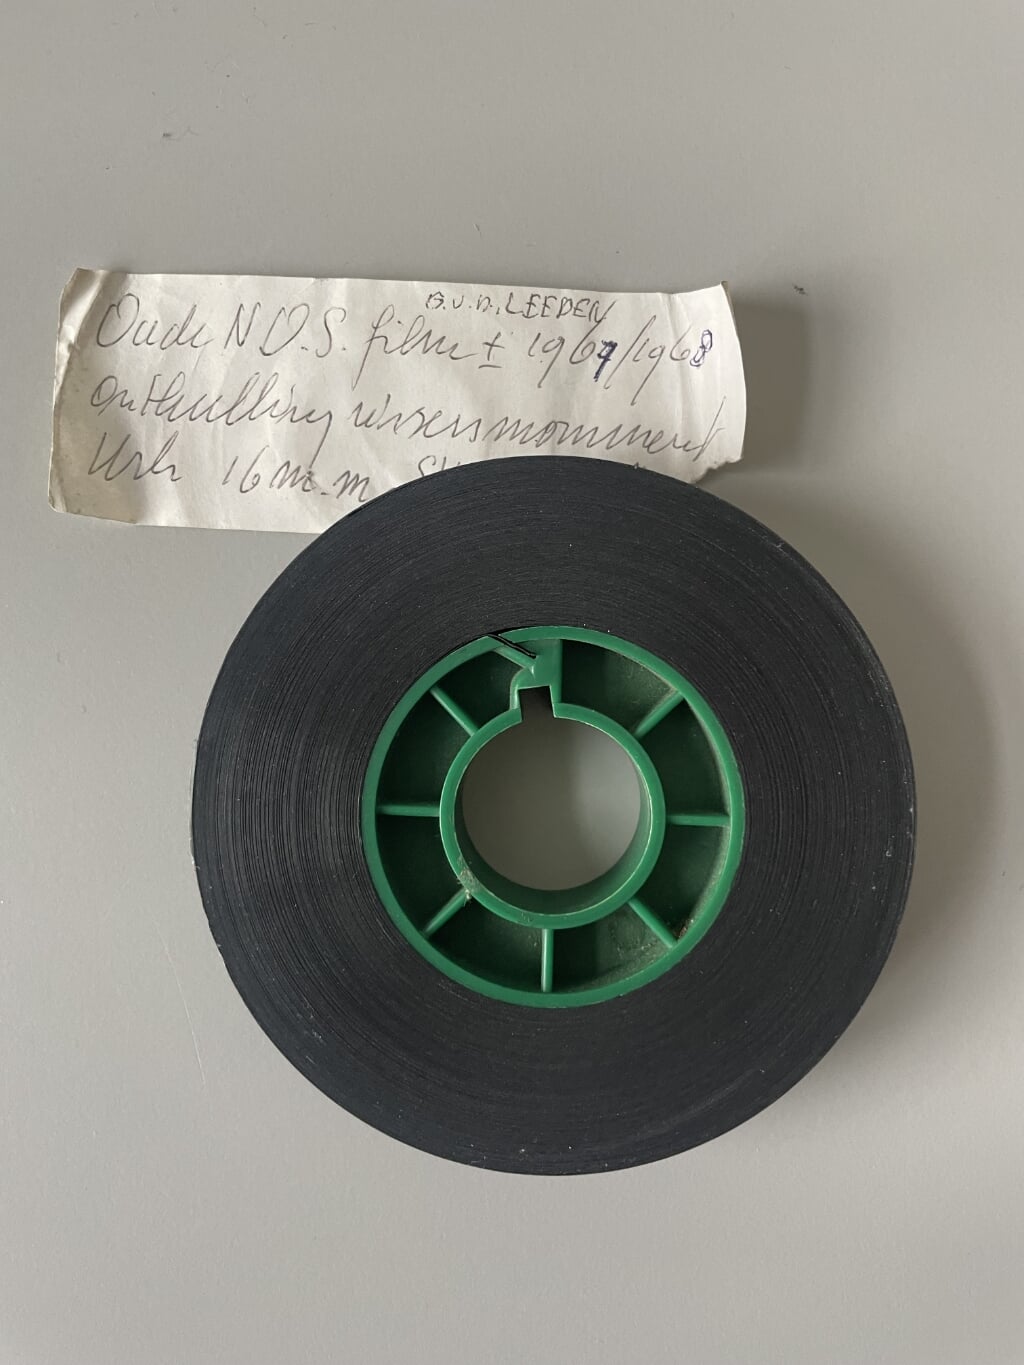 n Het 16mm-bandje, waarvan de beelden getoond zijn tijdens de lezing van Marjanne Romkes-Foppen. Een oude NOS-film, zo is op het briefje te lezen.